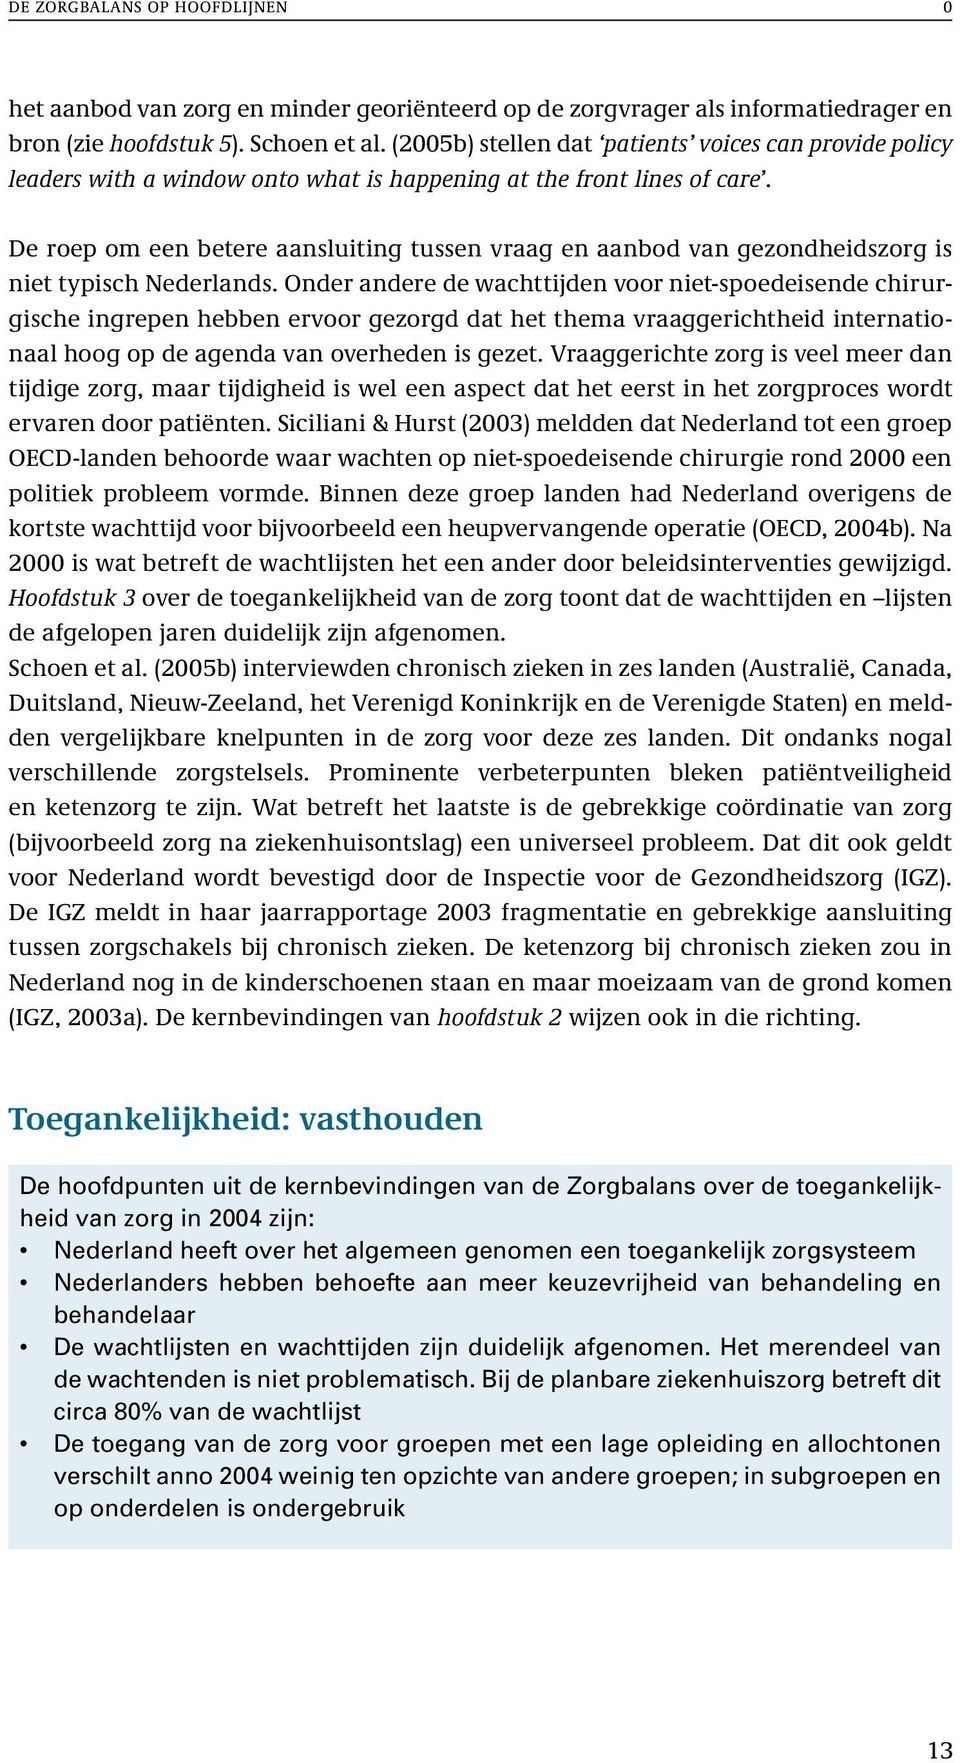 De roep om een betere aansluiting tussen vraag en aanbod van gezondheidszorg is niet typisch Nederlands.